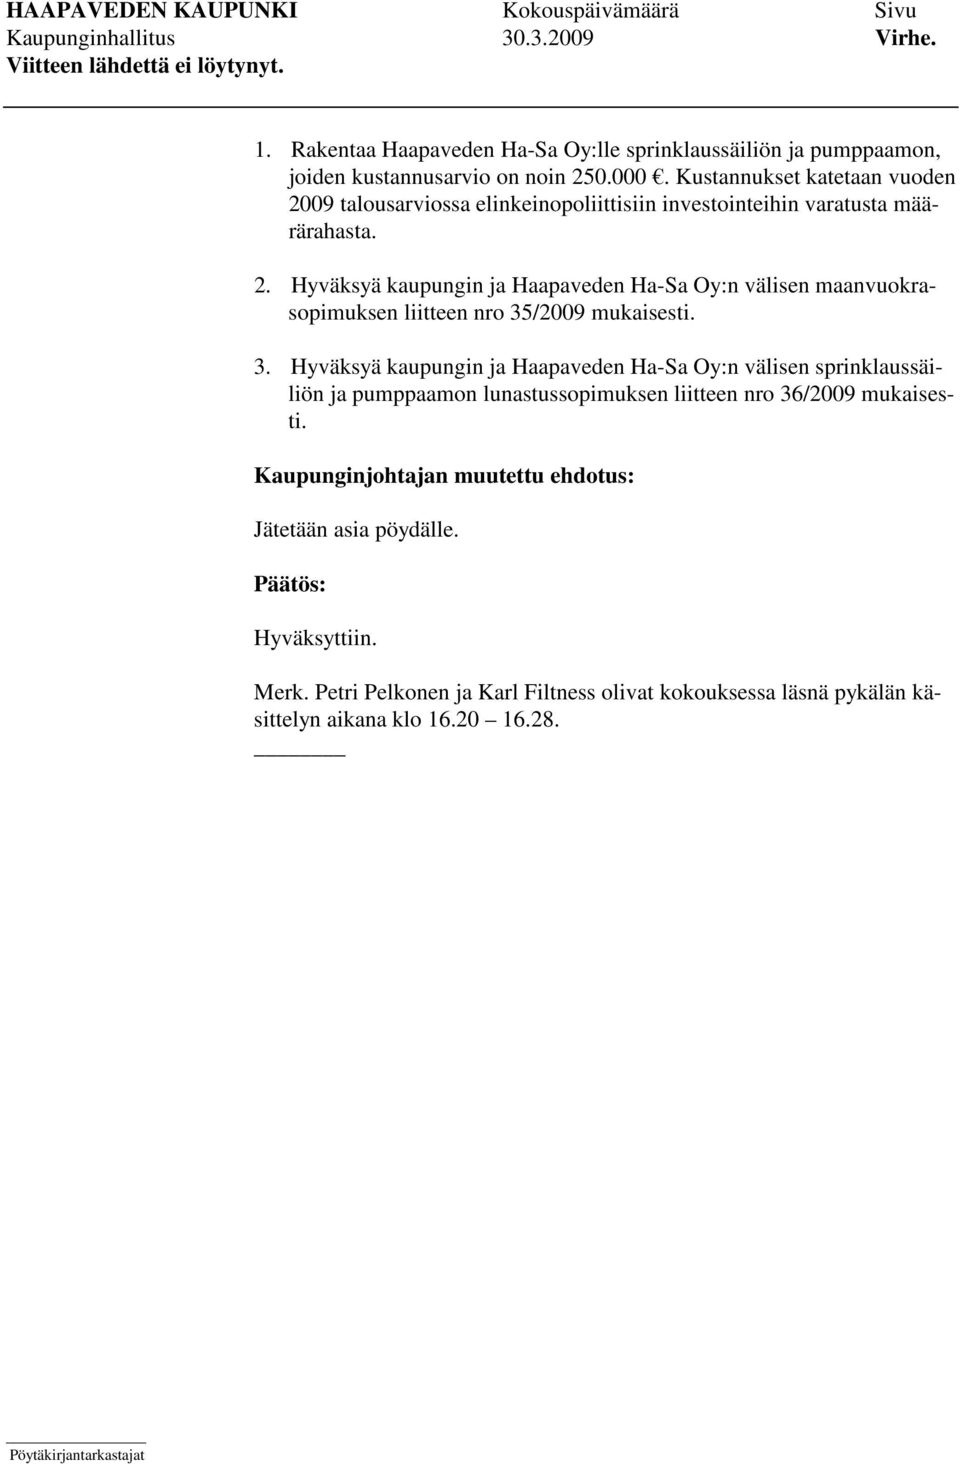 3. Hyväksyä kaupungin ja Haapaveden Ha-Sa Oy:n välisen sprinklaussäiliön ja pumppaamon lunastussopimuksen liitteen nro 36/2009 mukaisesti.